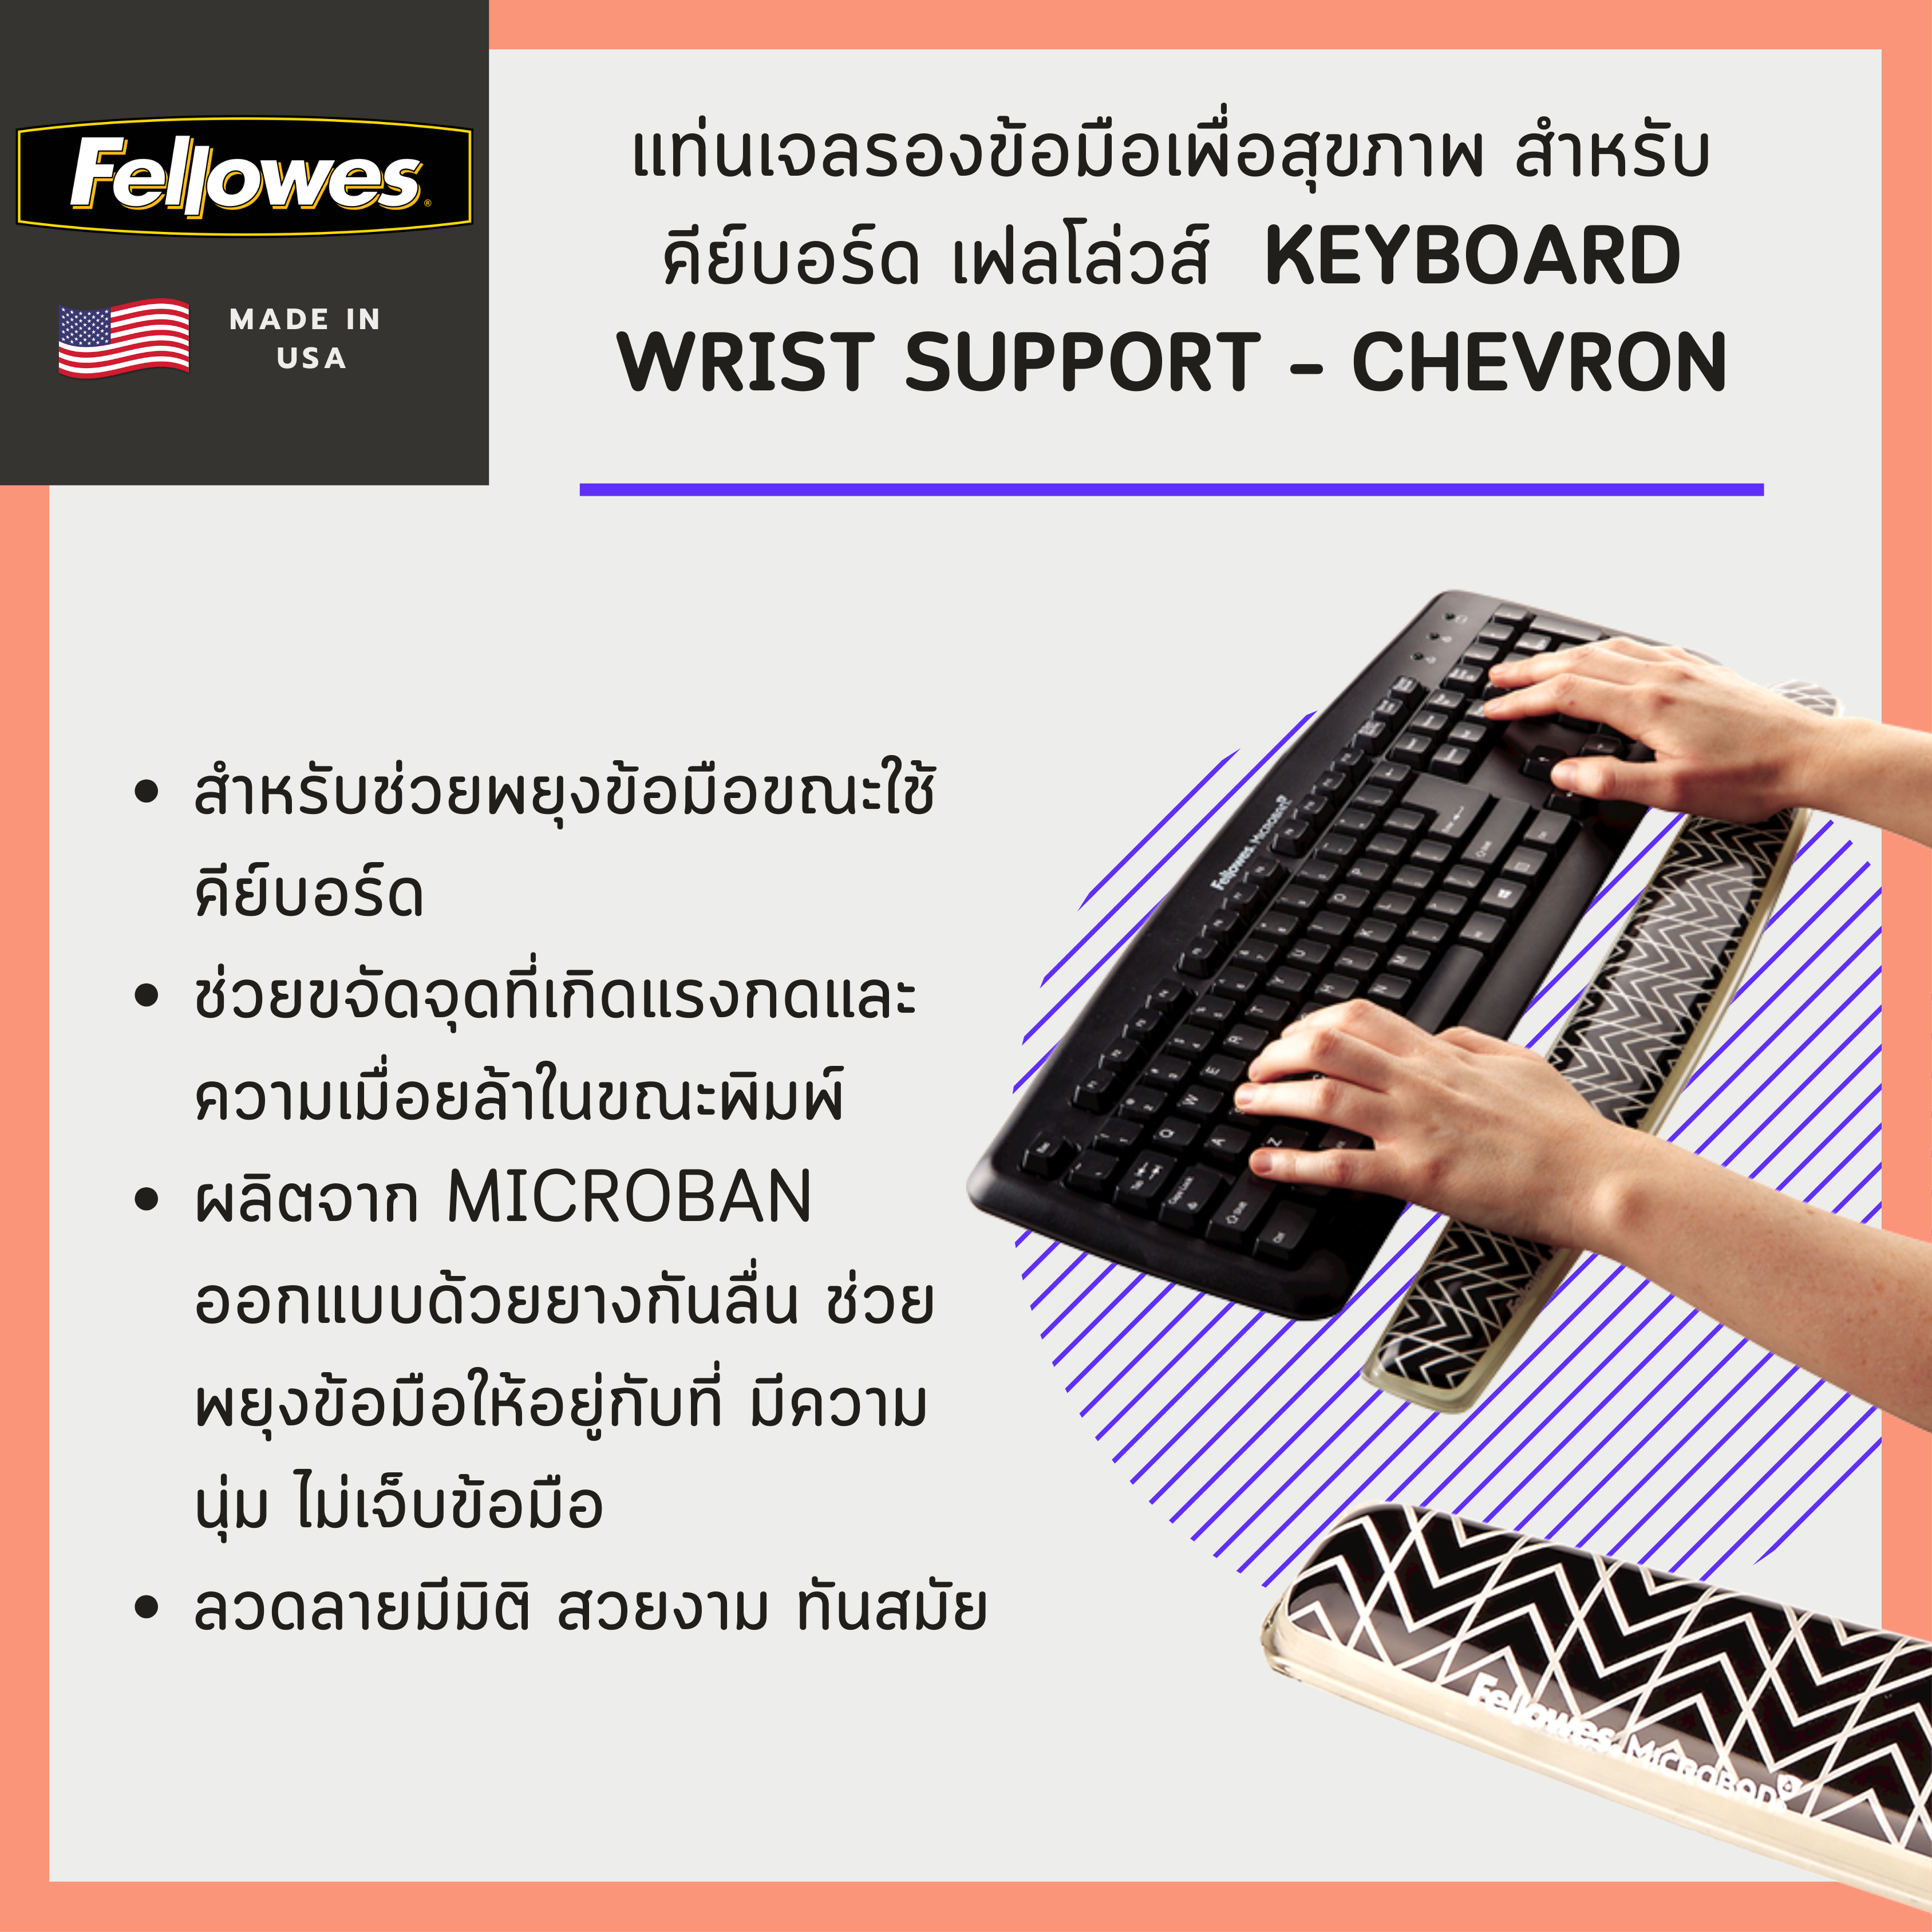 แท่นเจลรองข้อมือเพื่อสุขภาพ สำหรับคีย์บอร์ด เฟลโล่วส์ Keyboard Wrist Support - Chevron